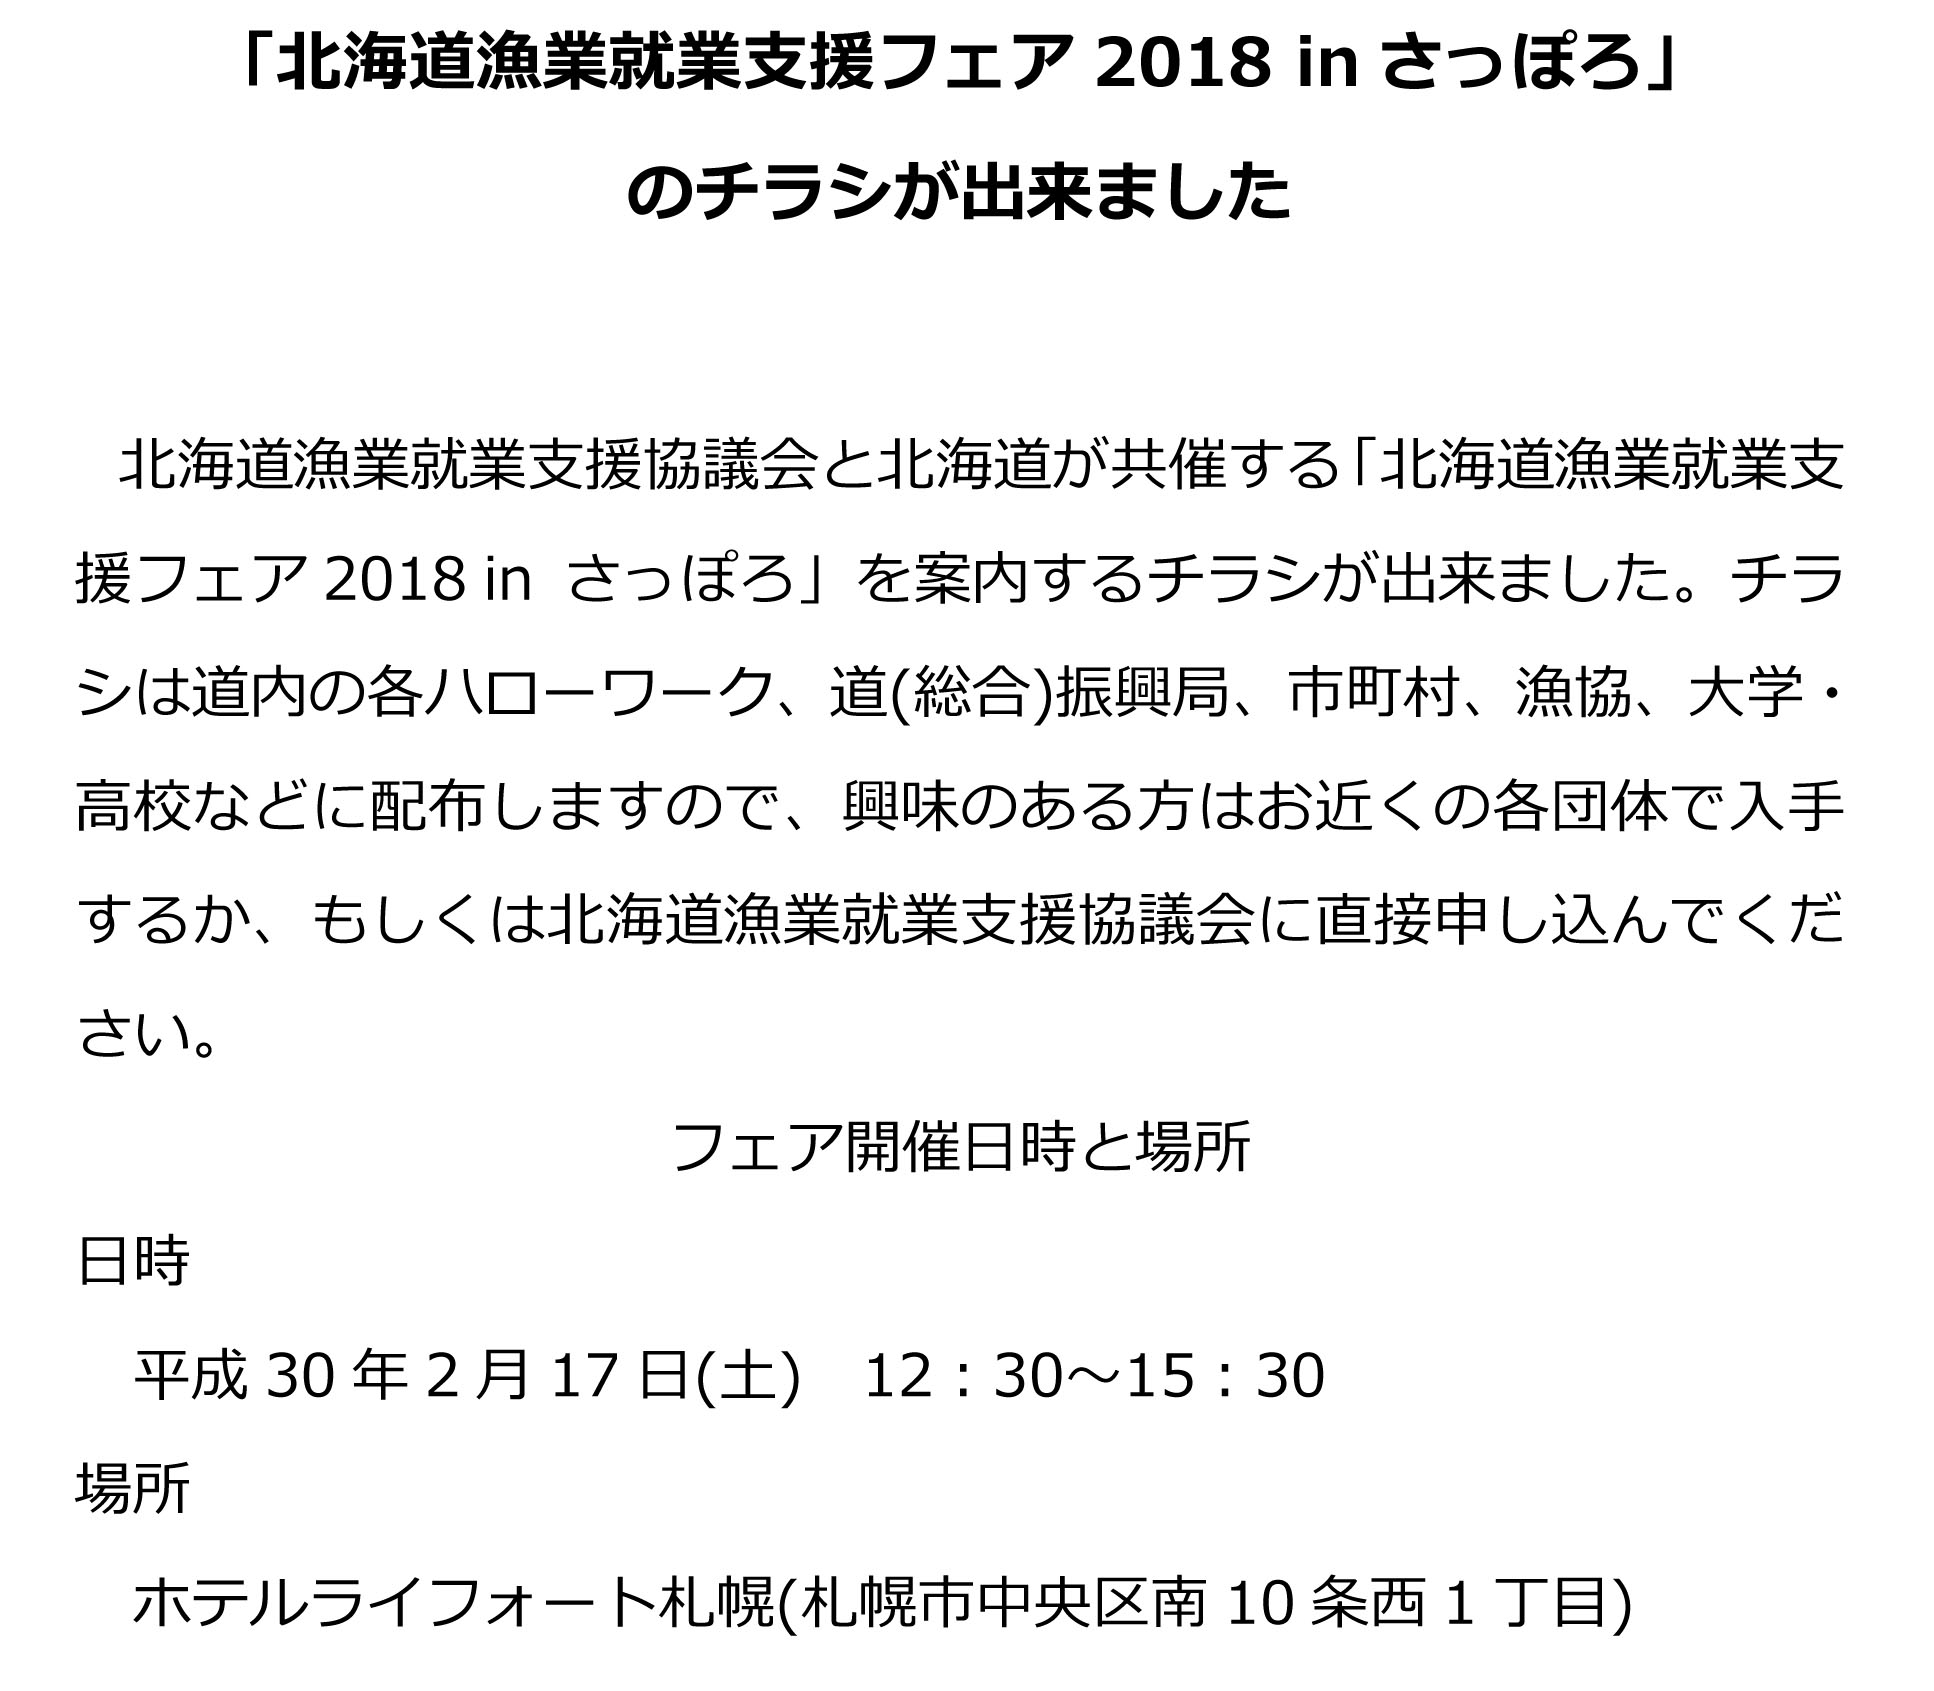 北海道漁業就業支援フェア2018 inさっぽろ1